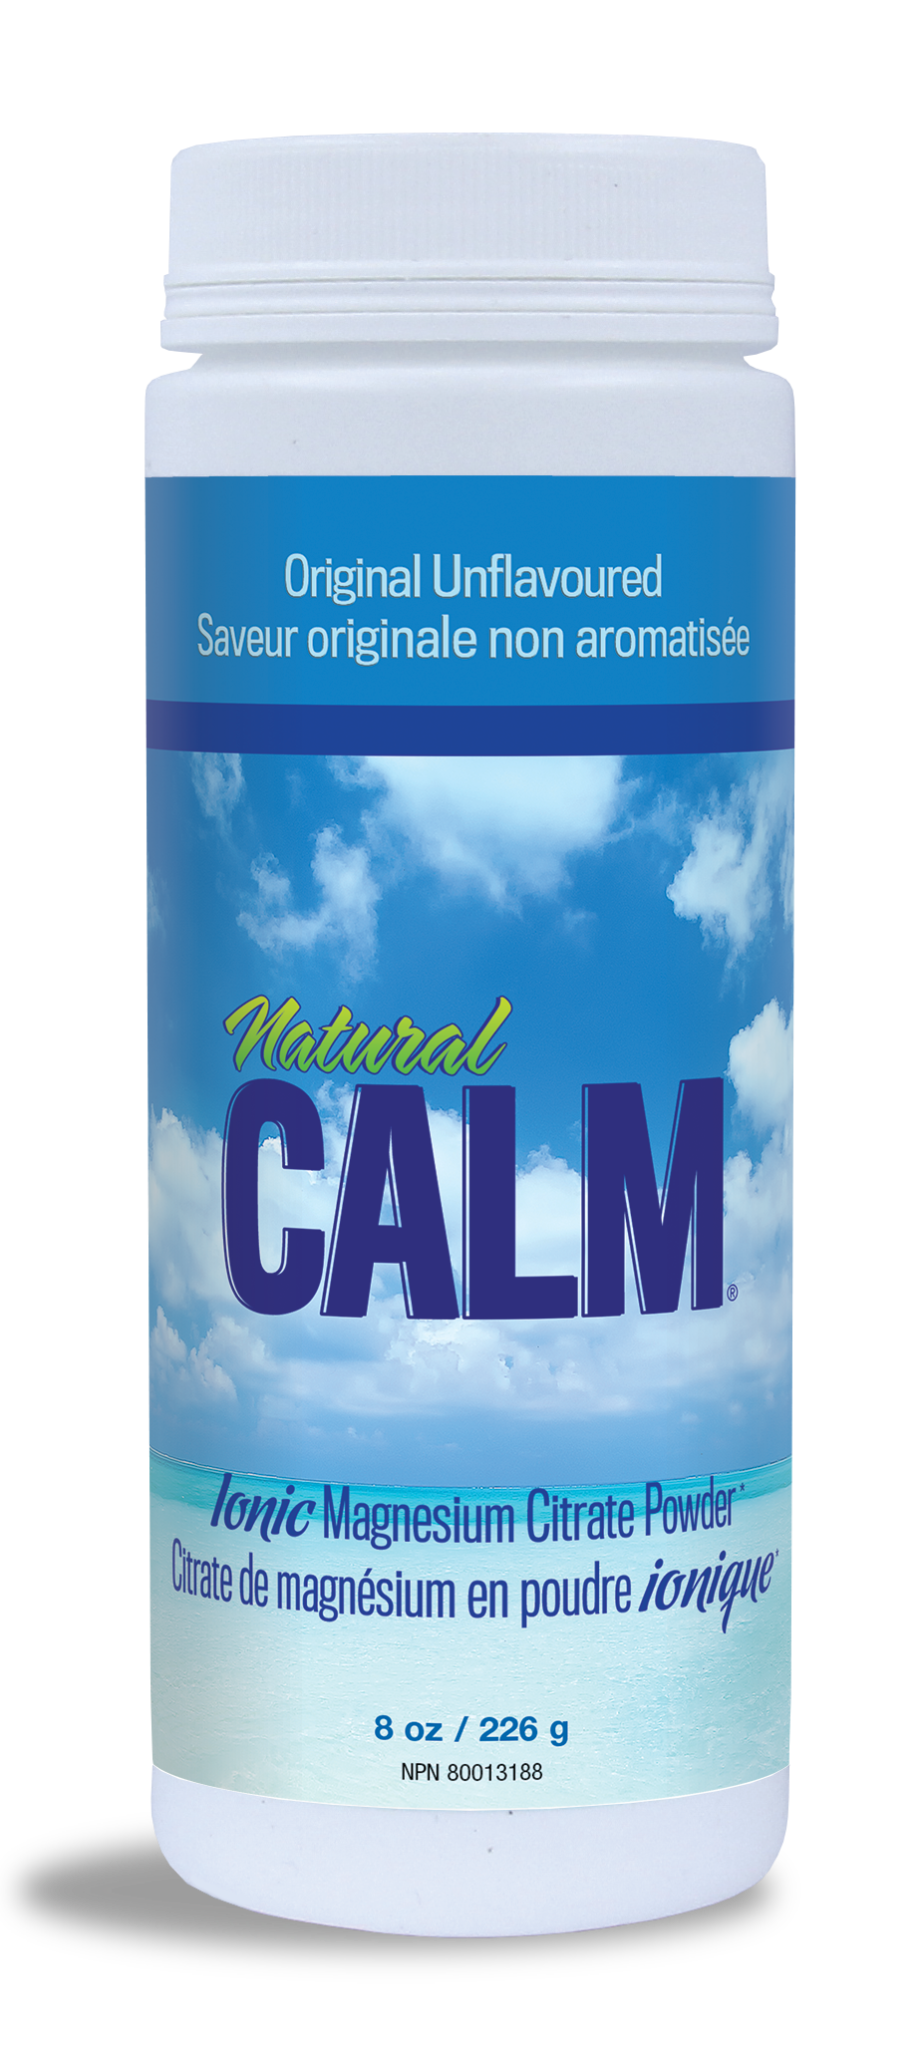 Natural Calm - Magnesium Citrate Powder - Original Unflavoured -  8oz